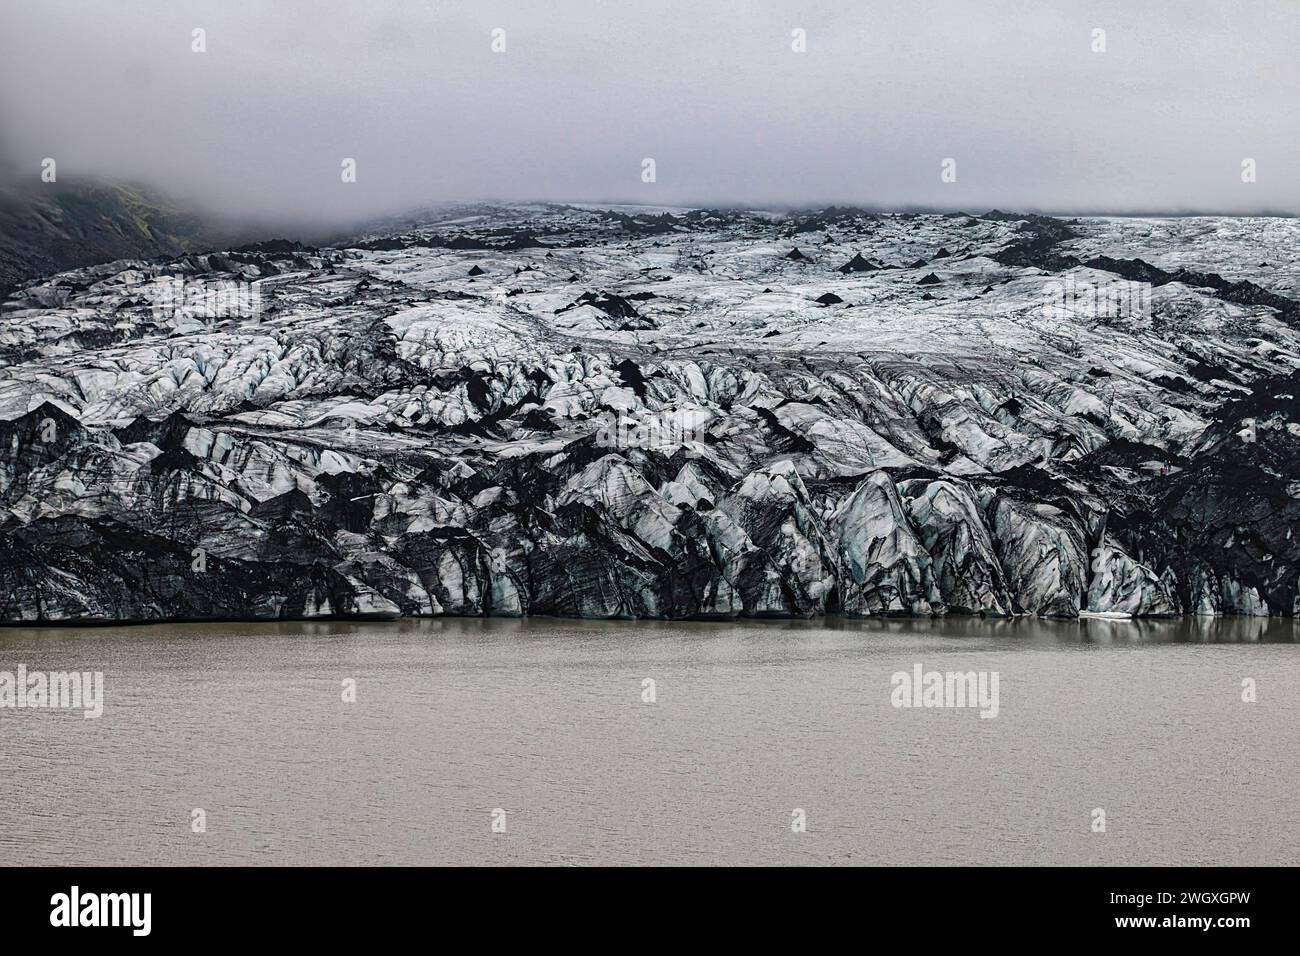 Sólheimajökull : une décharge glaciaire de la plus grande calotte glaciaire de Mýrdalsjökull dans le sud de l'Islande. Banque D'Images